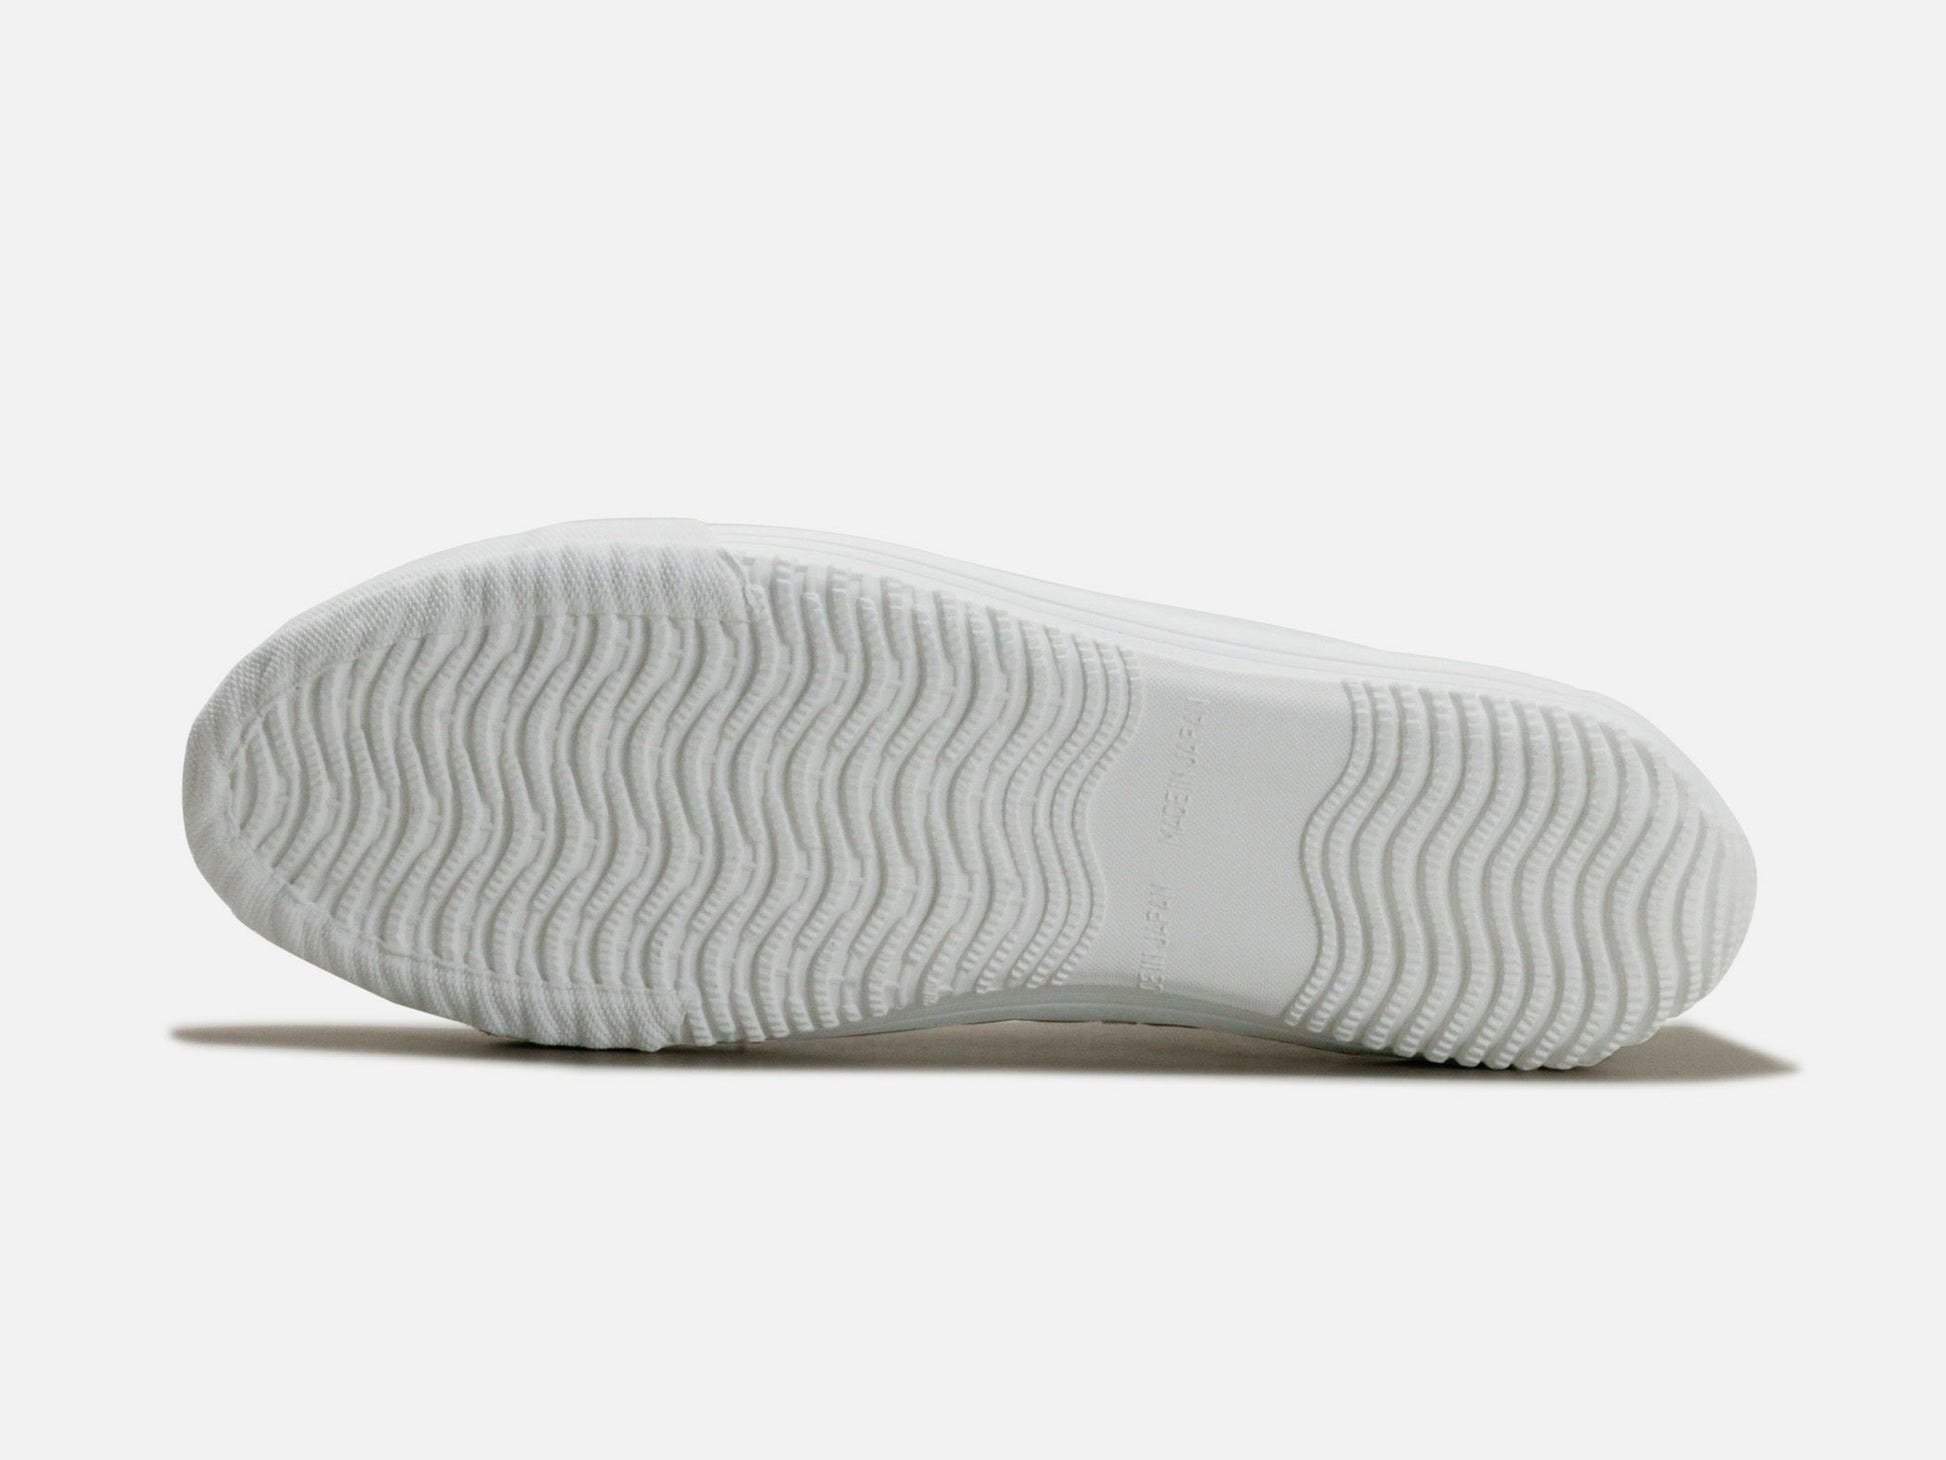 SPINGLE MOVEのスニーカー「SPM-356 White」の靴底の商品画像